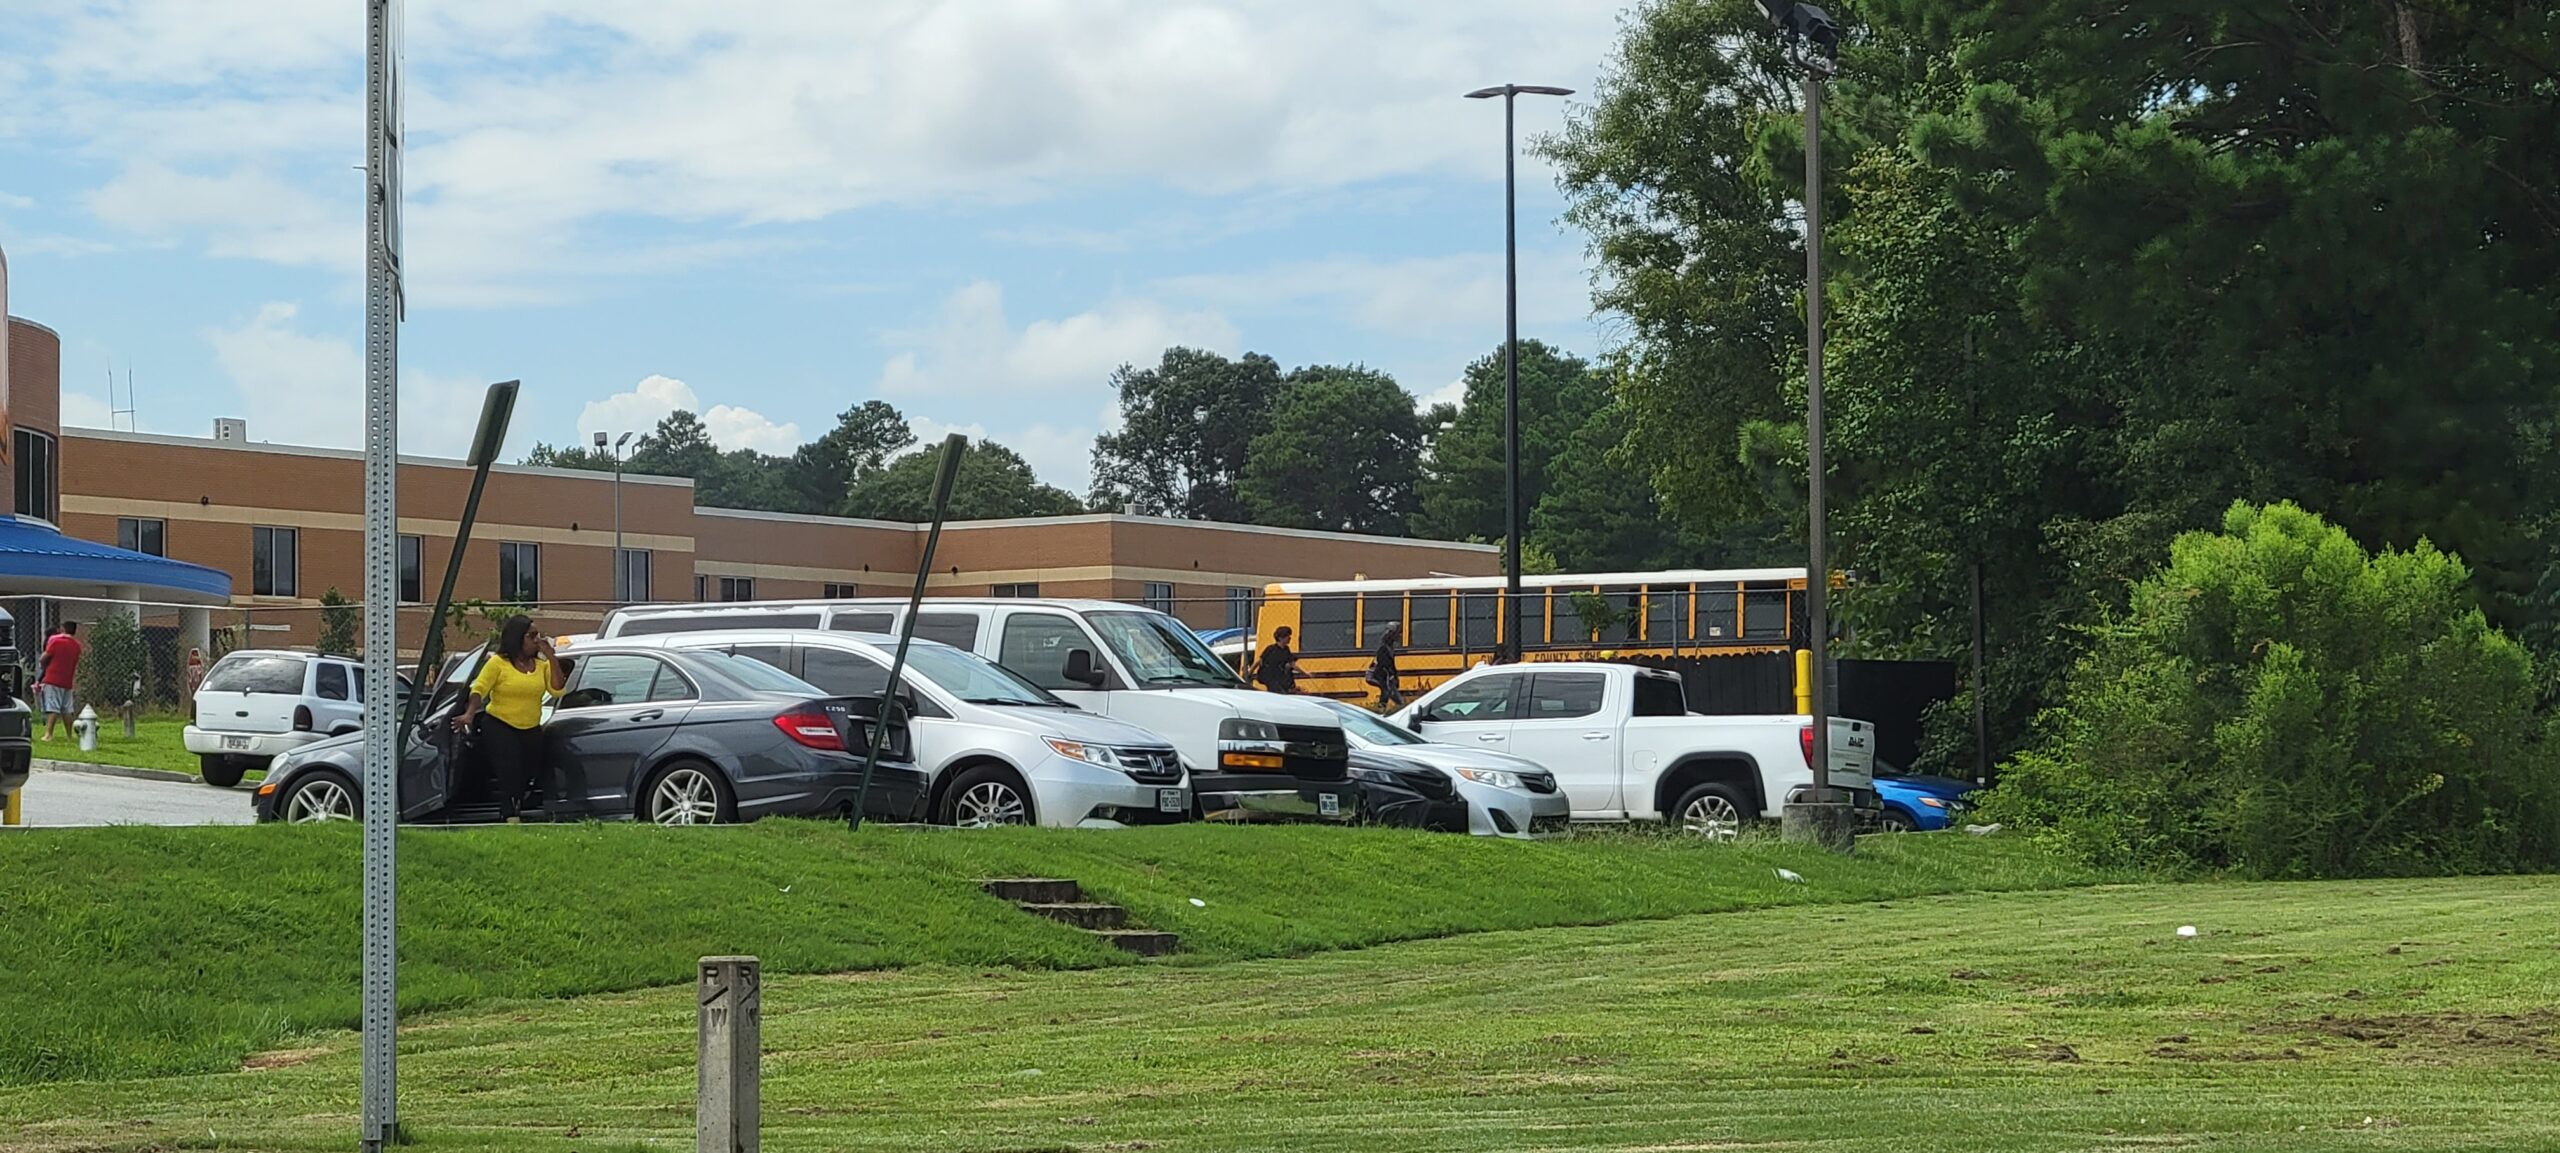  Autoridades dicen que no hubo una persona armada en altercado que provocó cierre de una escuela en Lilburn